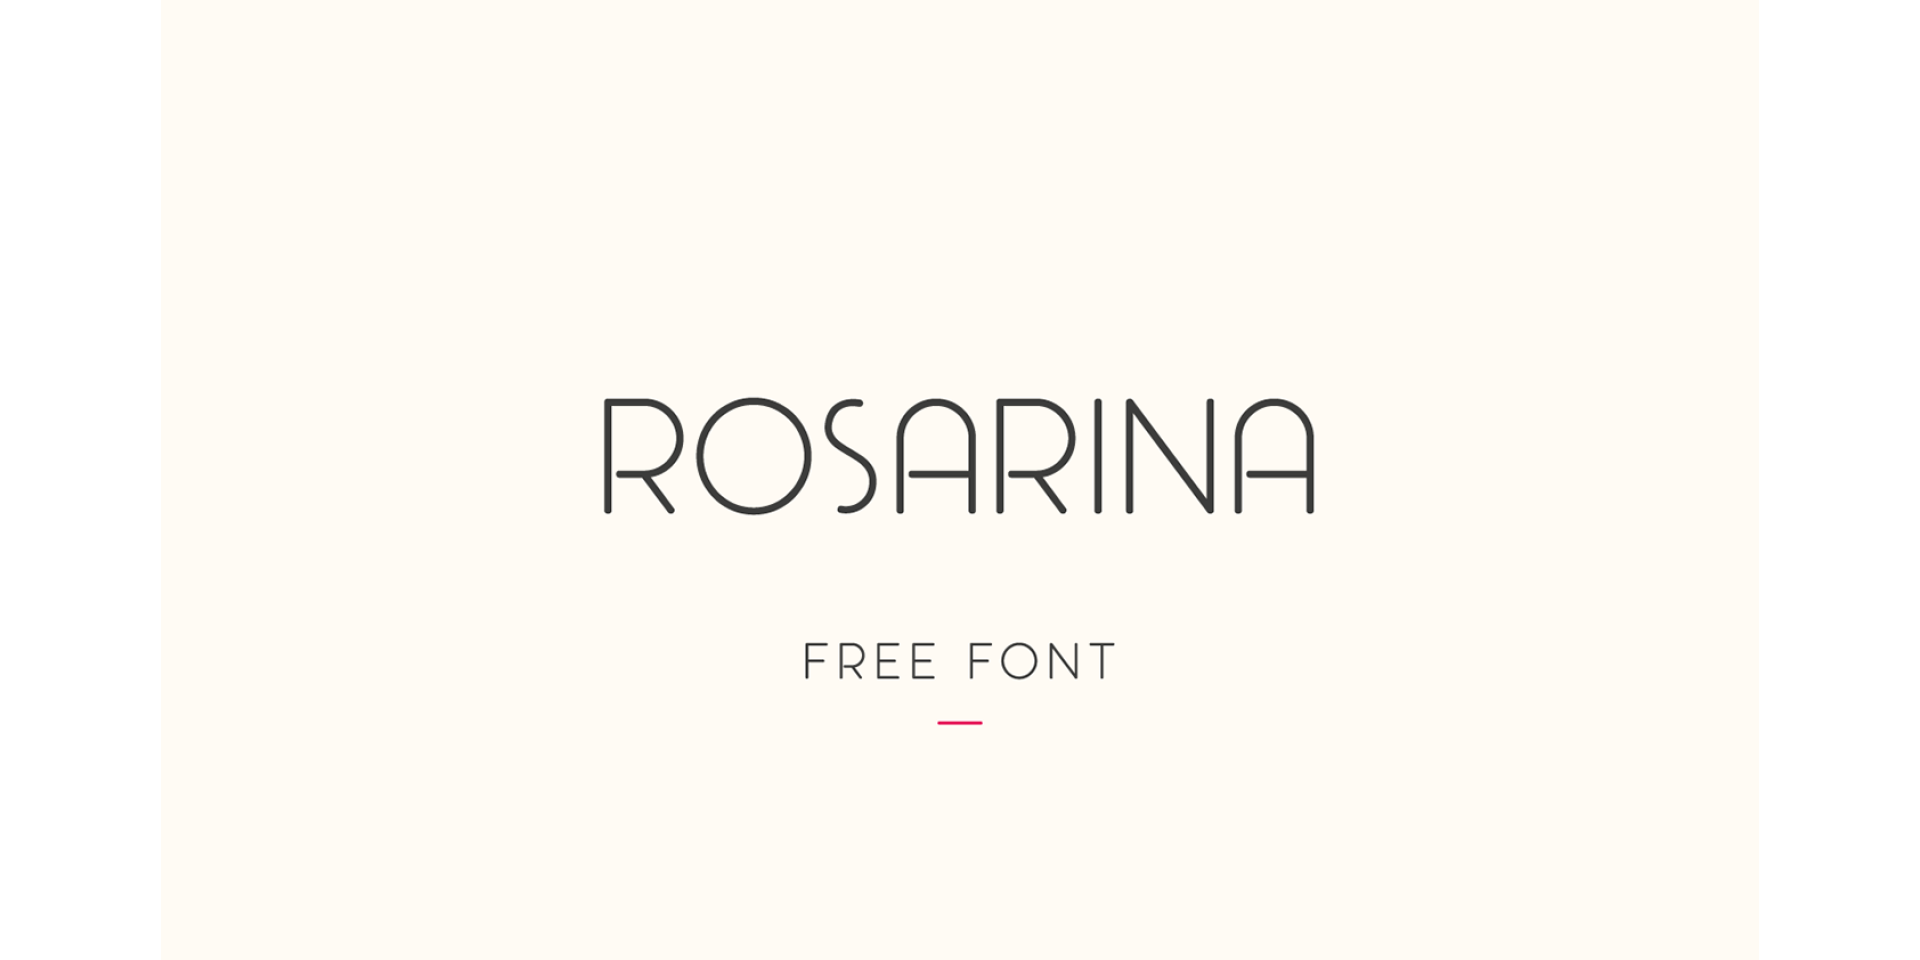 Rosarina